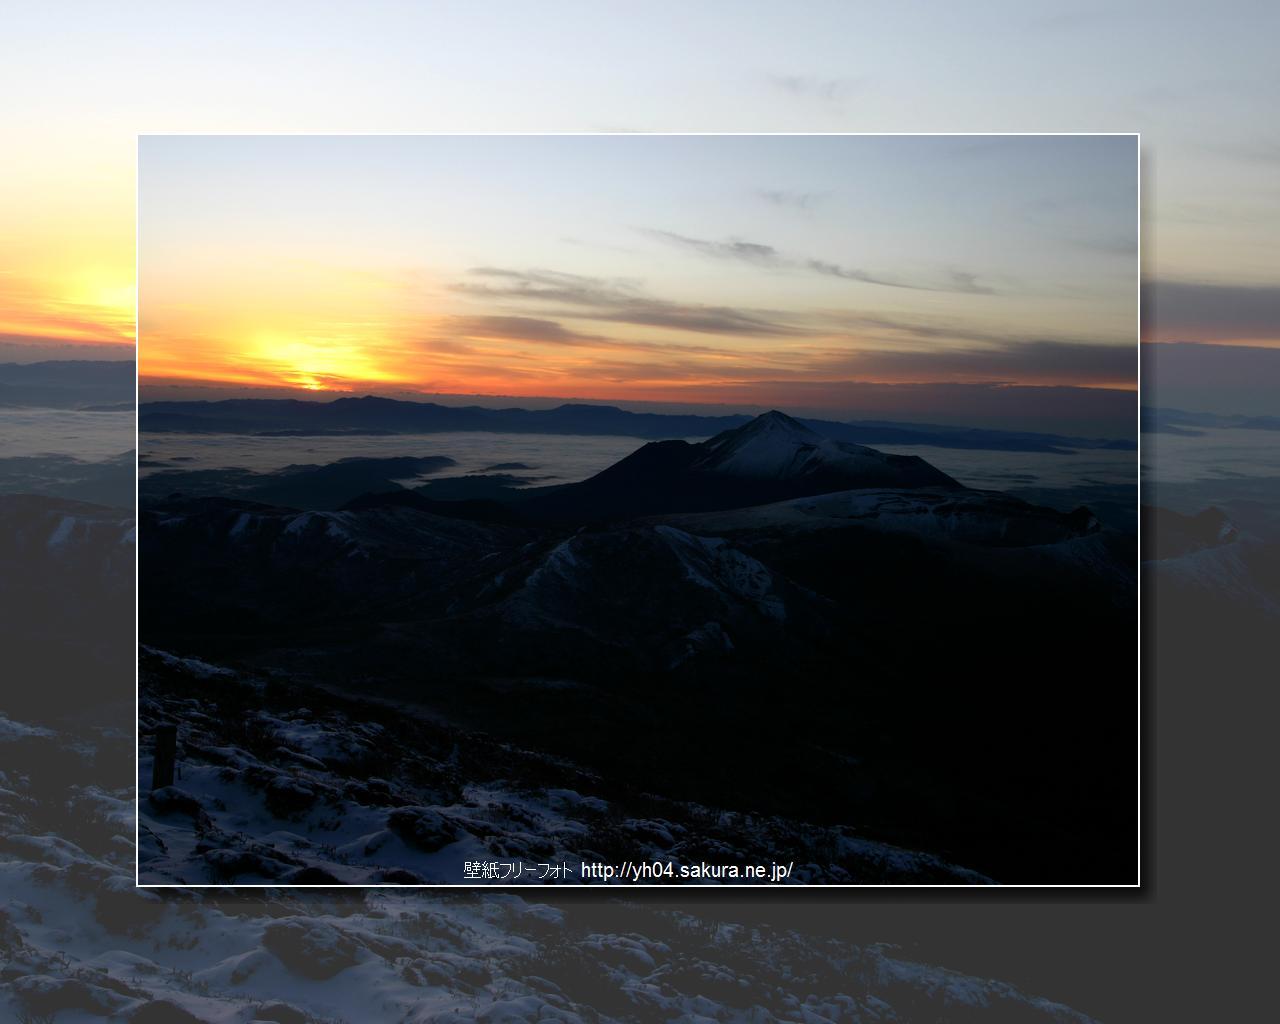 霧島連山,高千穂の峰の夜明け「高画質＋高解像度(1280×1024)」デスクトップ無料壁紙」